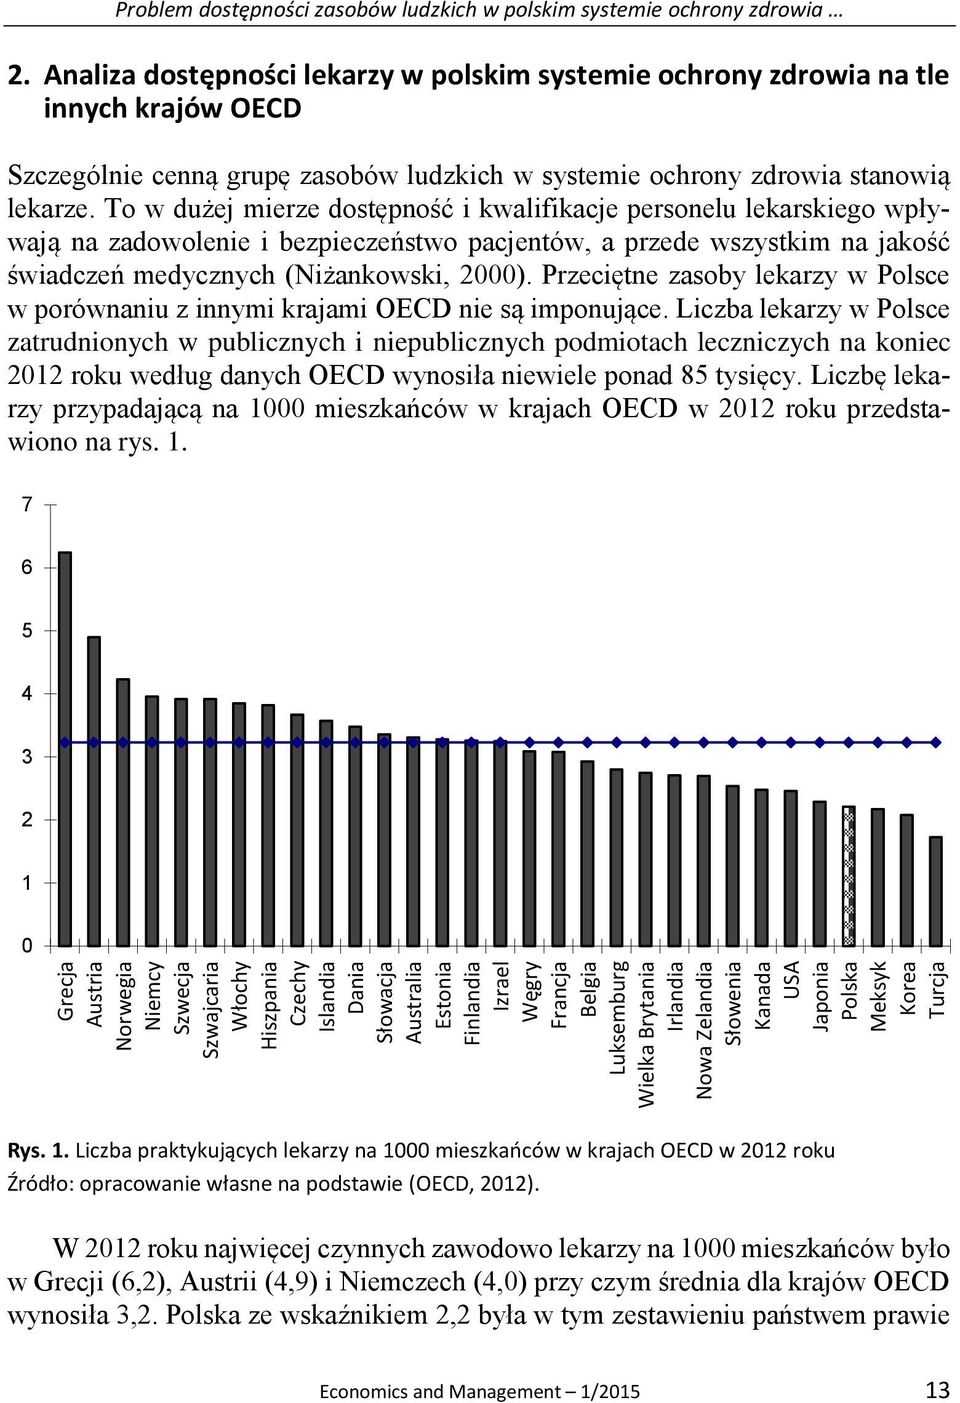 Analiza dostępności lekarzy w polskim systemie ochrony zdrowia na tle innych krajów OECD Szczególnie cenną grupę zasobów ludzkich w systemie ochrony zdrowia stanowią lekarze.